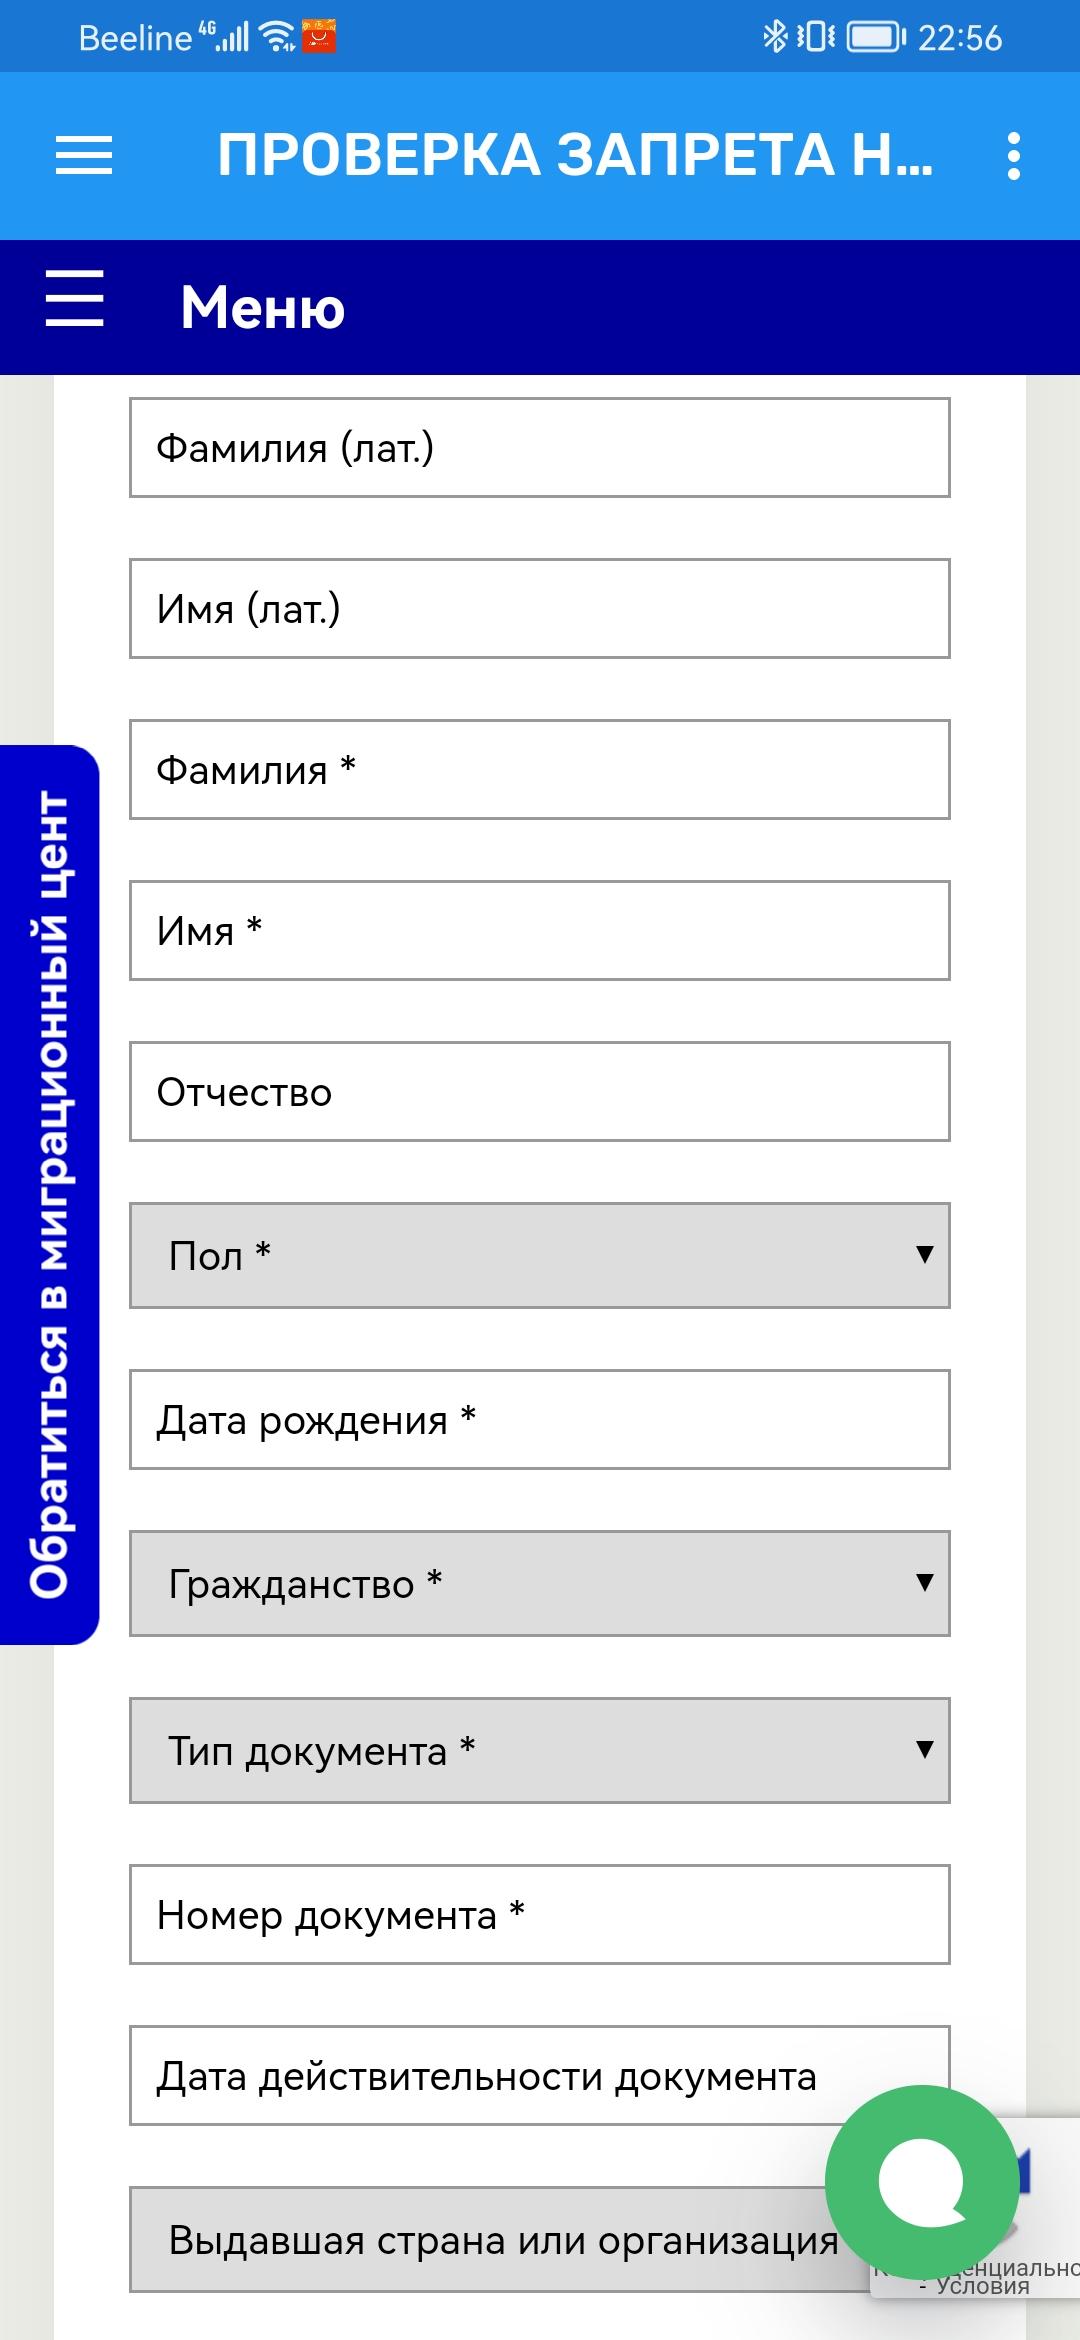 Service fms проверка запрета. Проверка запрета. Проверка запрета на въезд в Россию. Как можно проверить запрет. Проверка запрета на выезд.